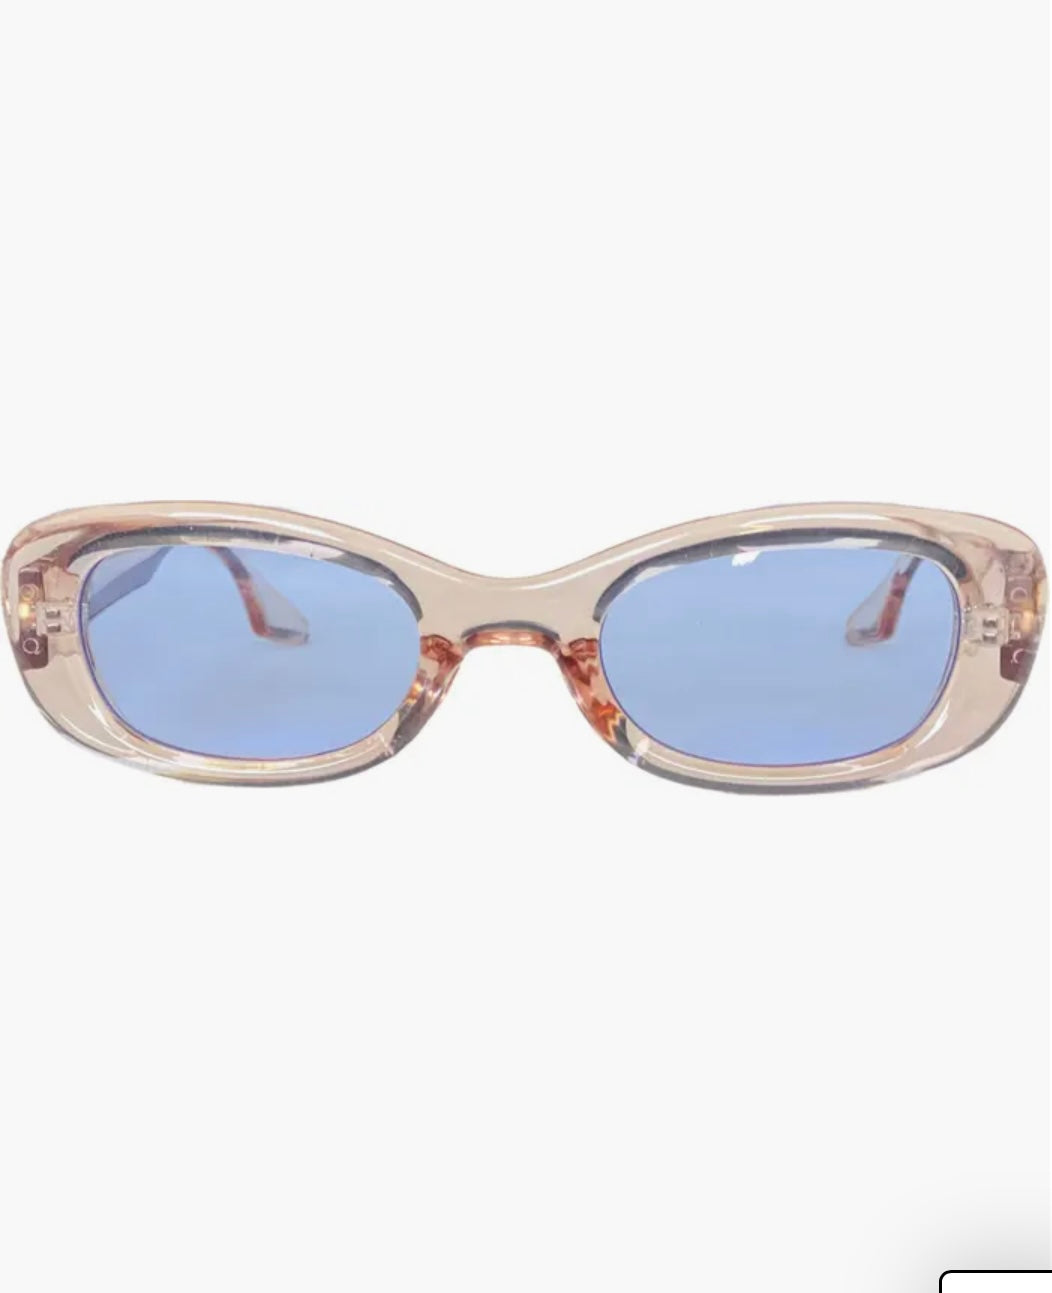 Jodykoes® Retro Style Vintage-Inspired Cat Eye Sunglasses Eyewear For Women (Light Blue)